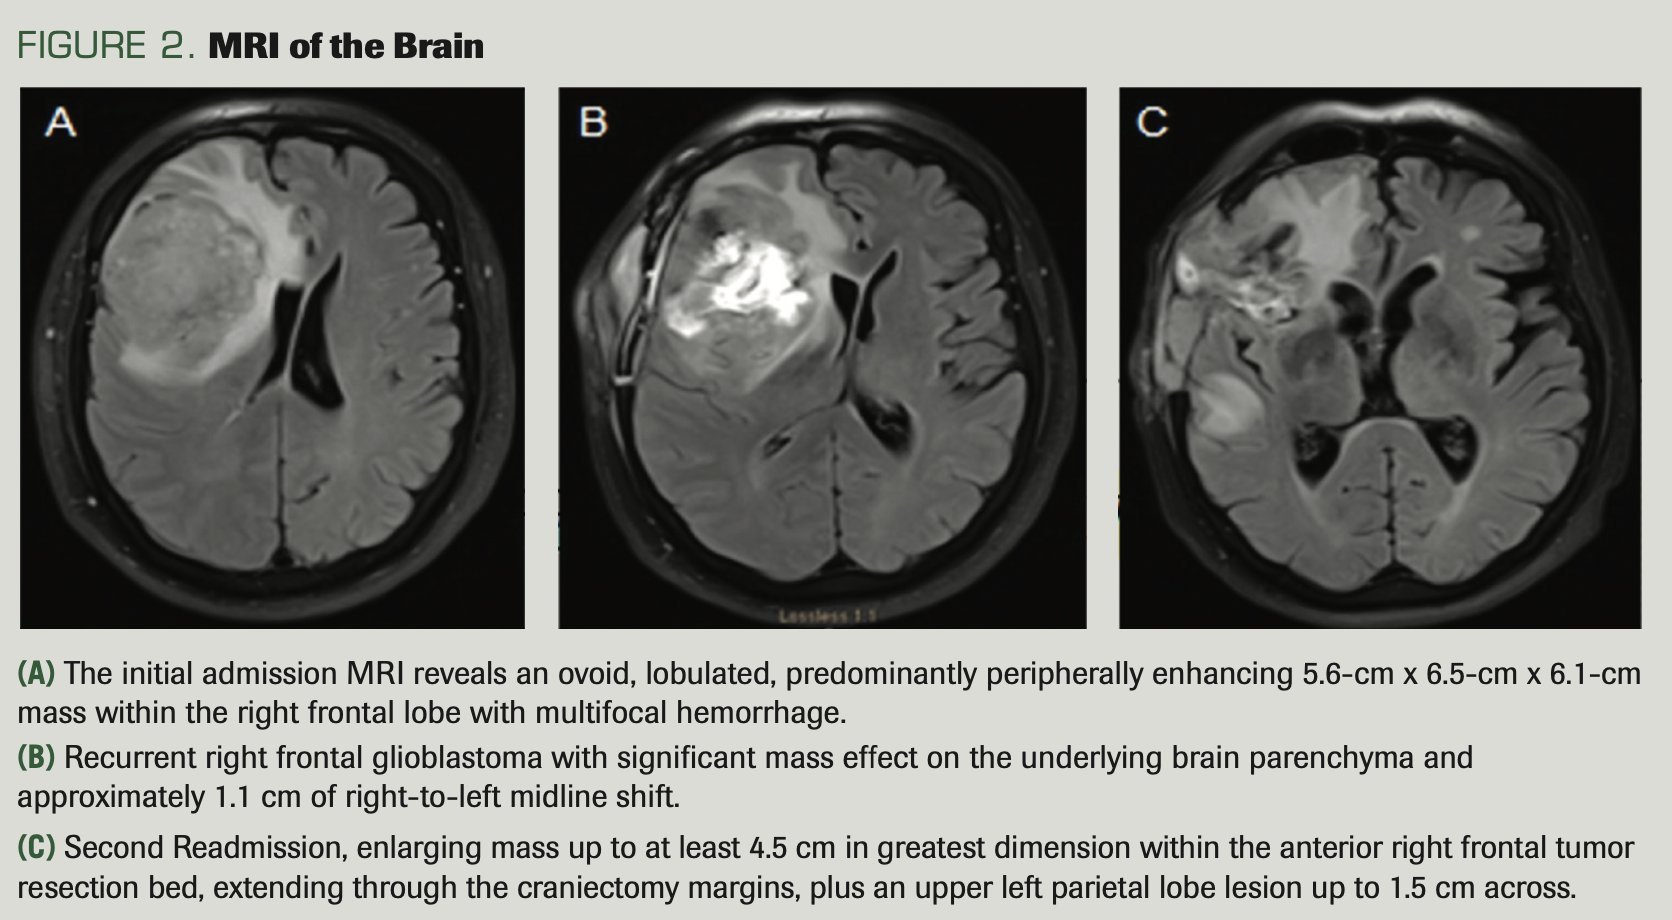 FIGURE 2. MRI of the Brain